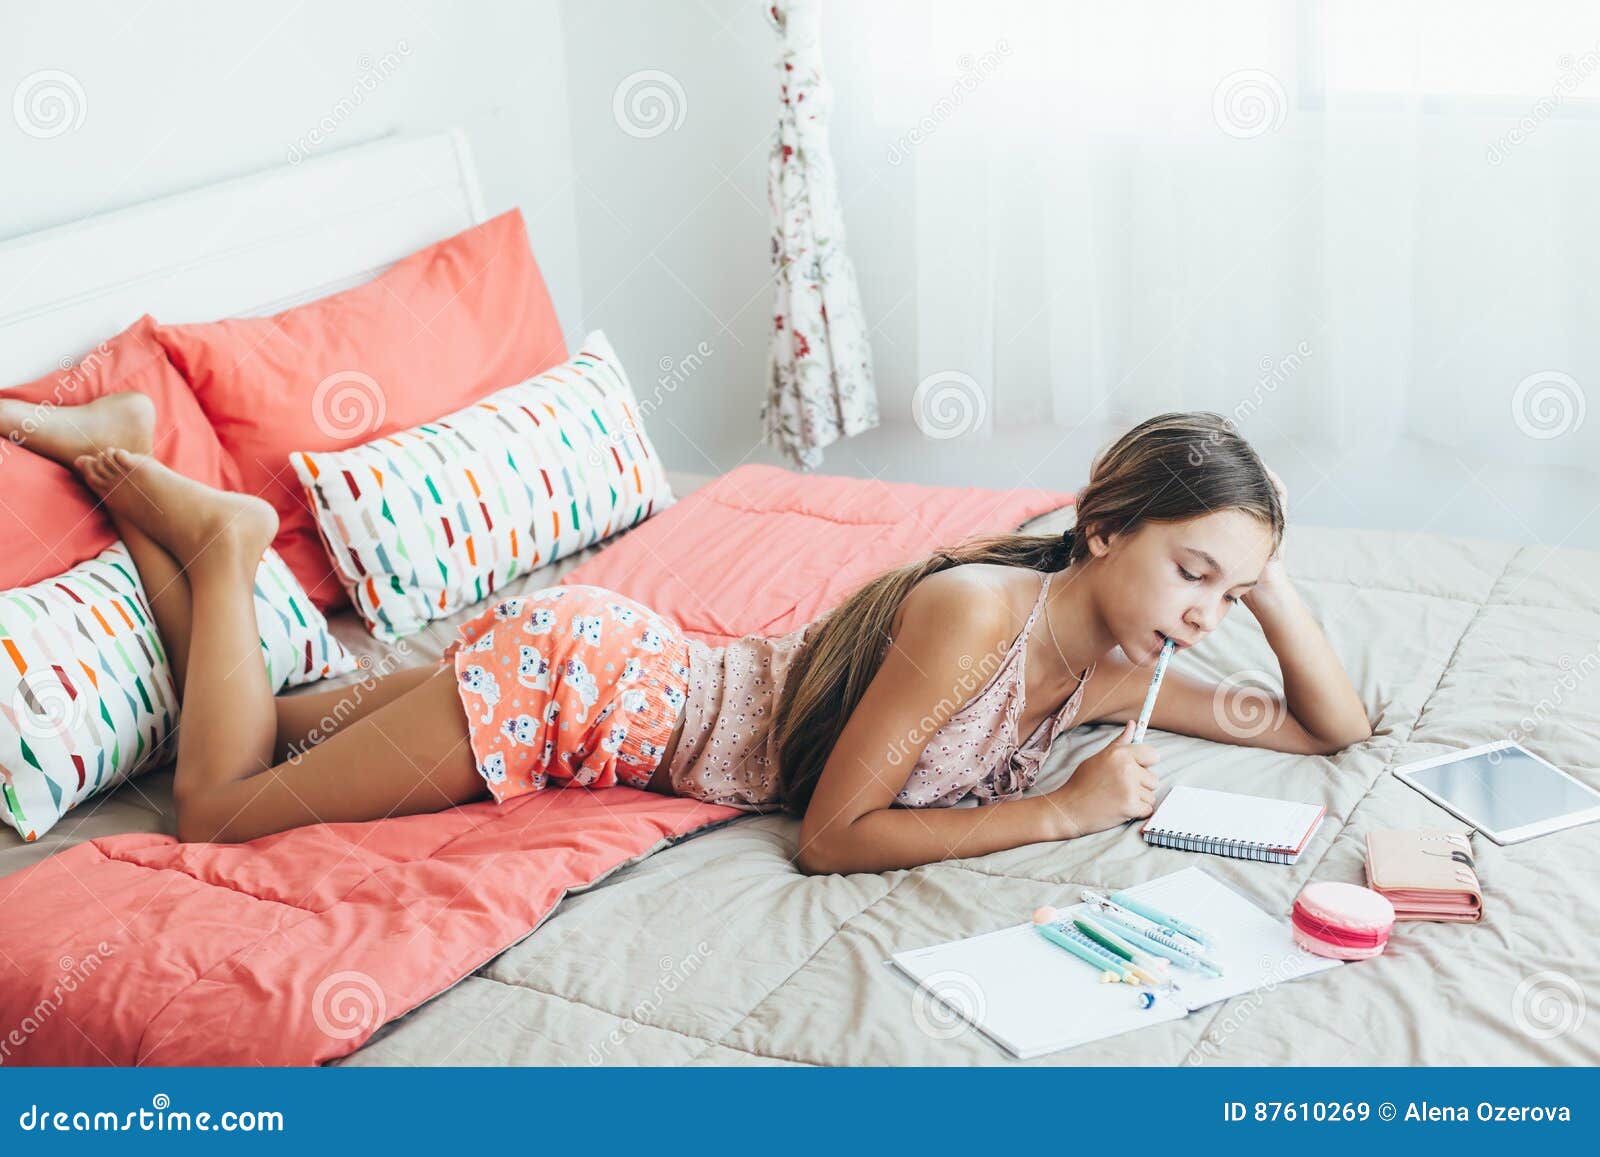 pre teen girl doing school homework